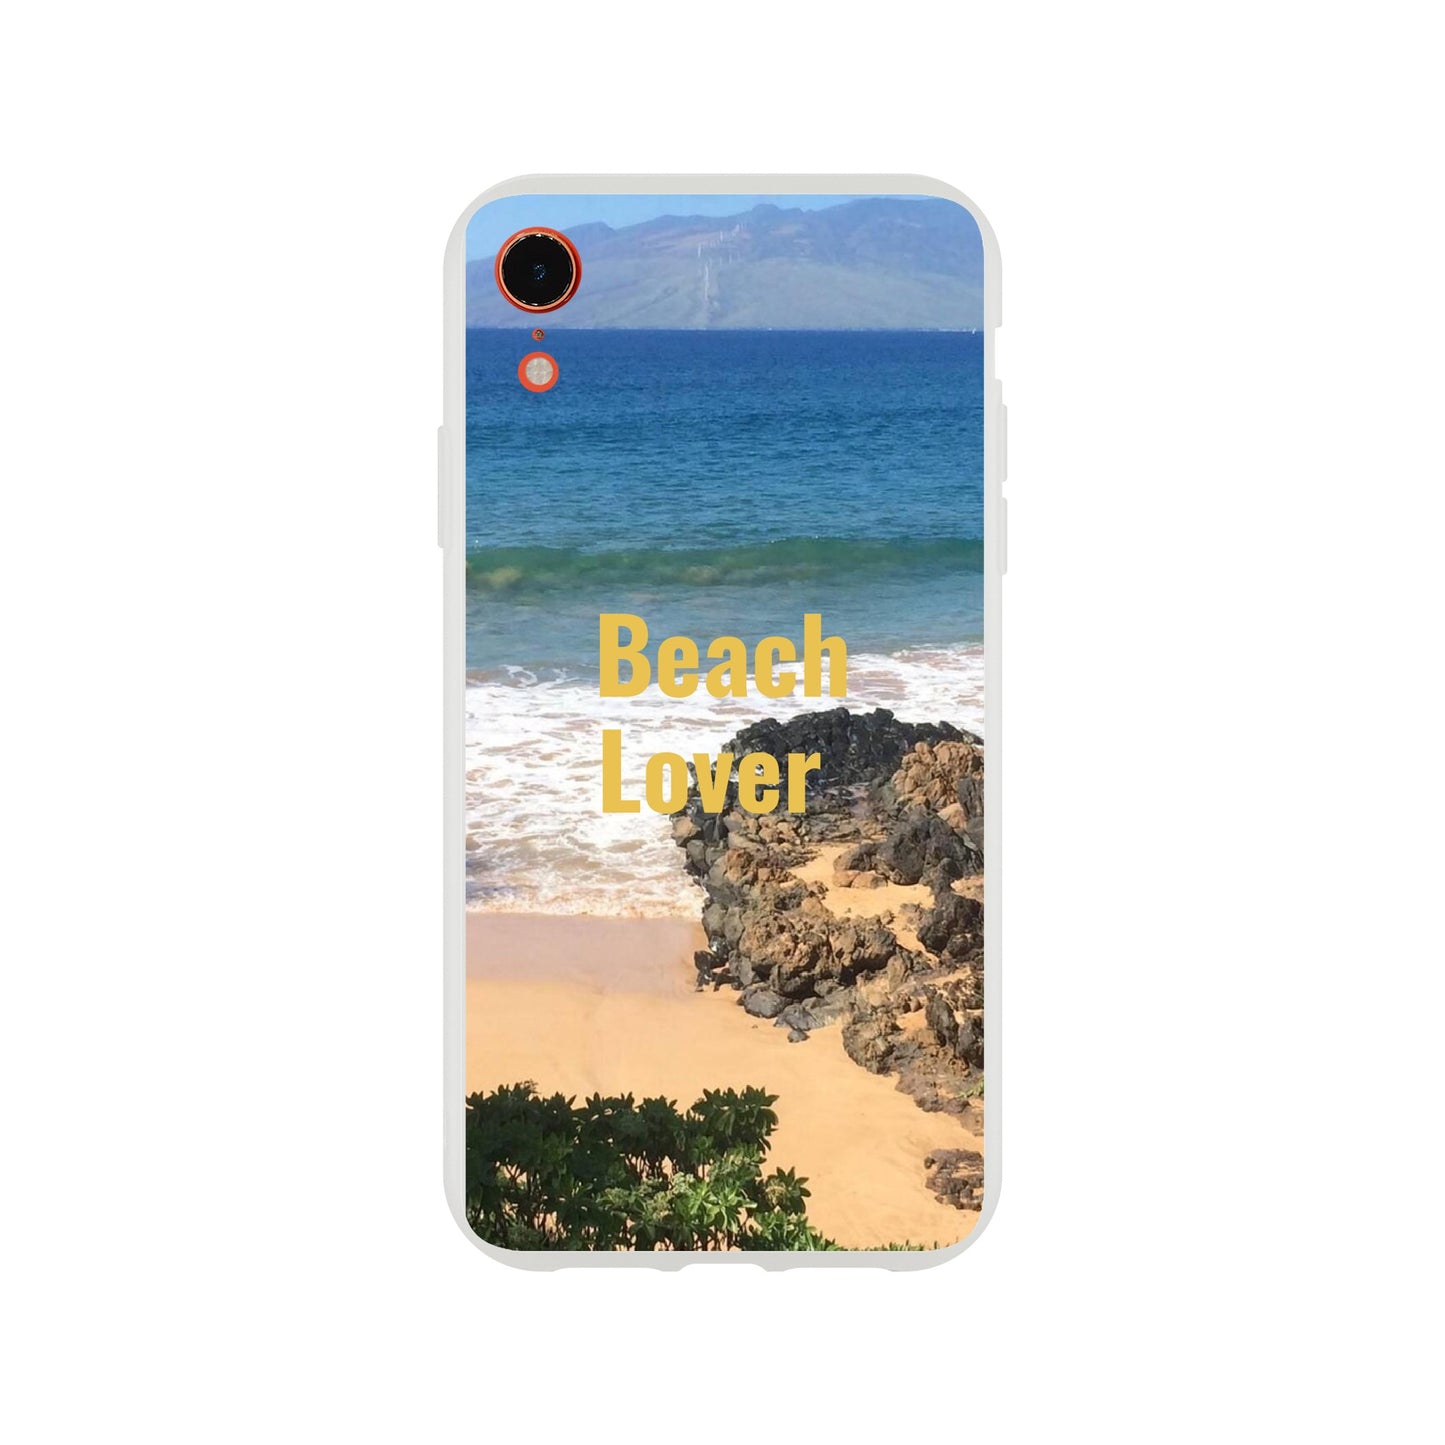 Flexi case for phone Beach lover with Hawaiian Beach